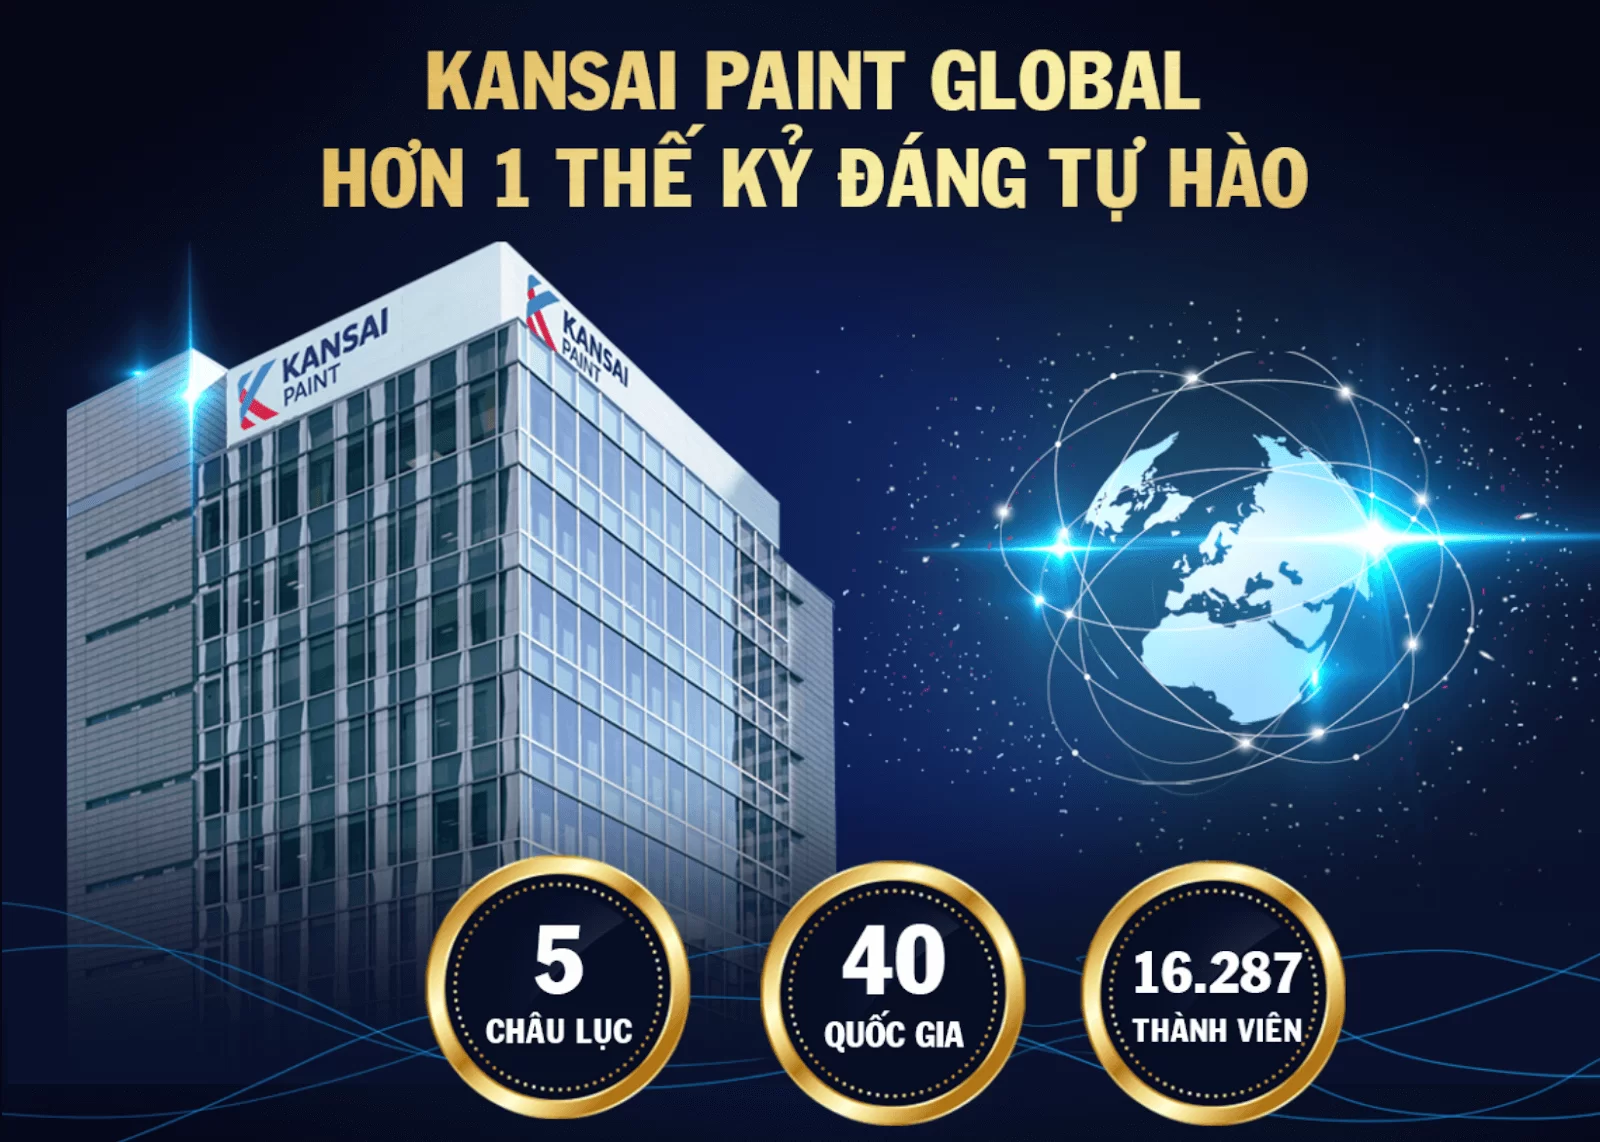 Sơn Kansai là một trong những thương hiệu sơn bán chạy nhất tại Việt Nam. Chất lượng của sản phẩm là một trong những điểm thu hút nhiều khách hàng nhất. Hãy xem hình ảnh để biết thêm về sơn Kansai.